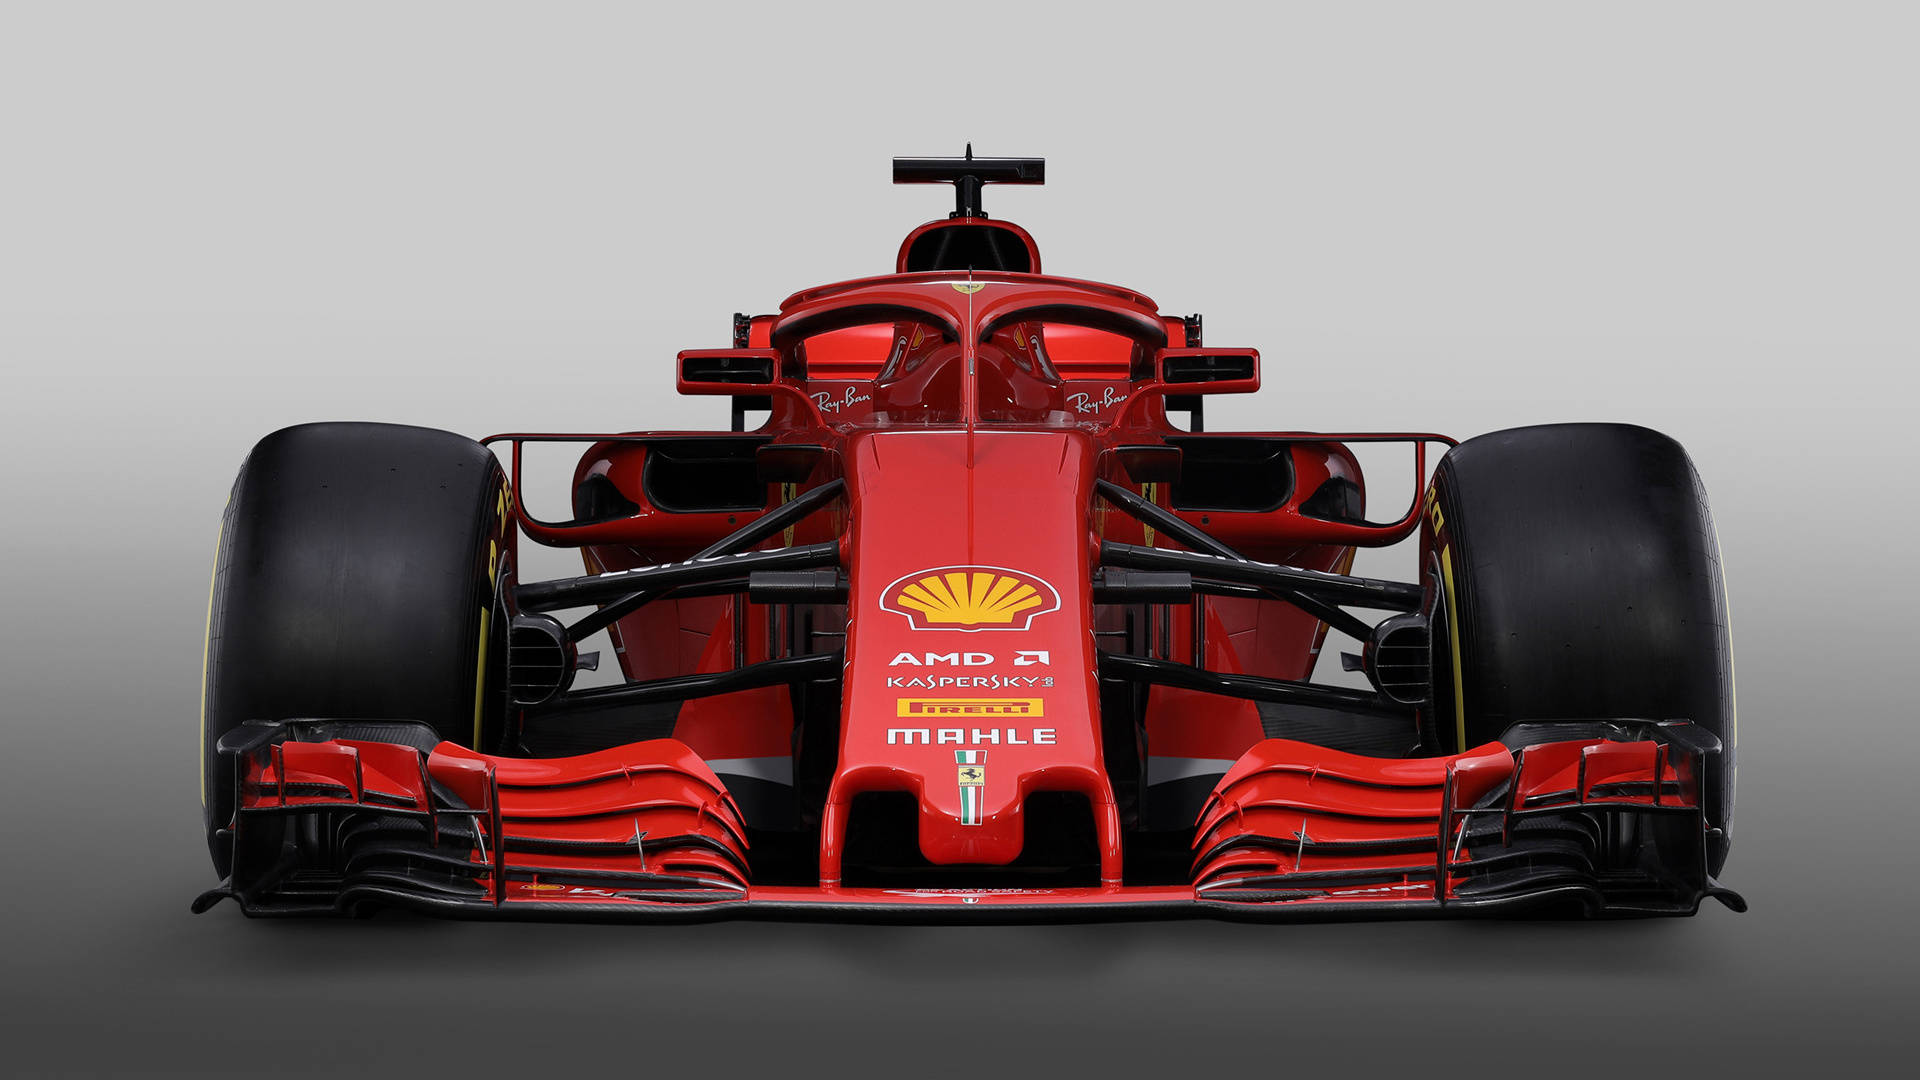 Ferrari F1 2018 Closer Front View